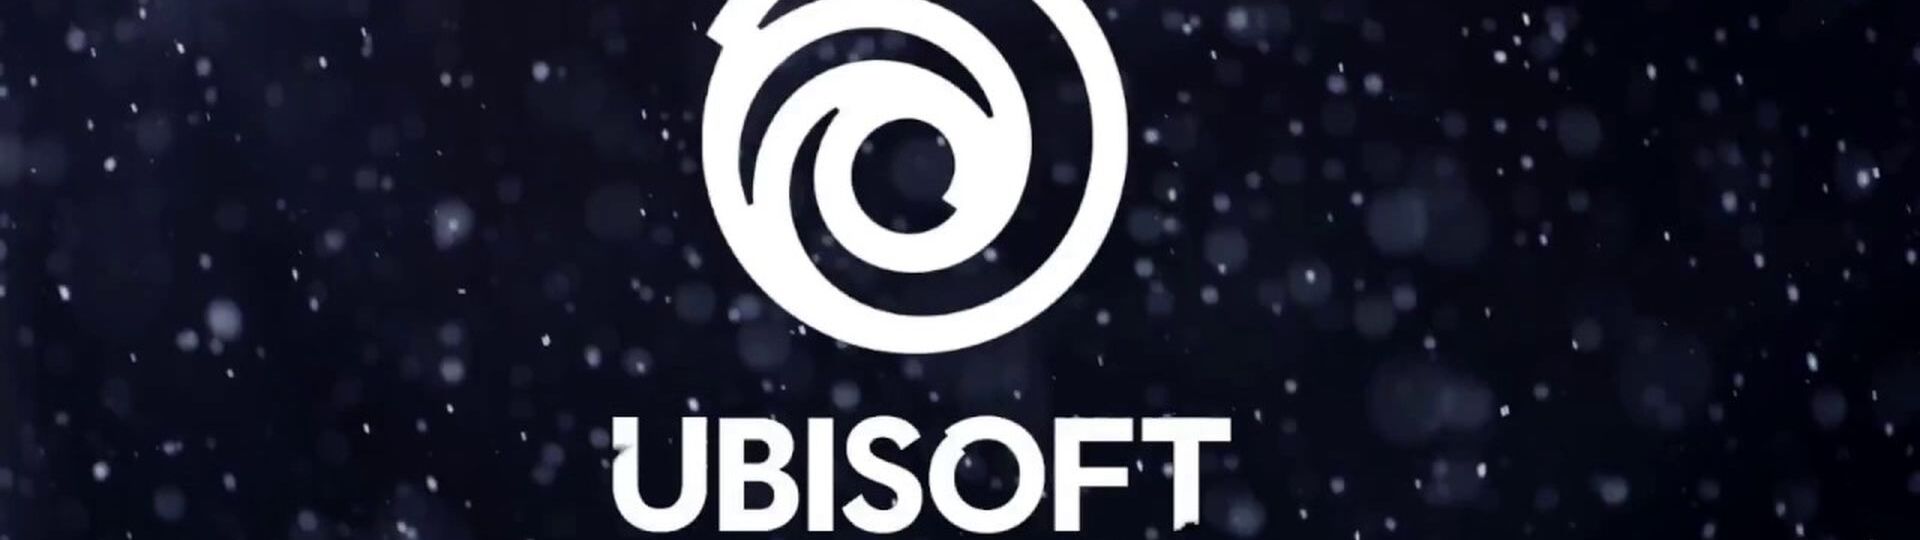 Ubisoft má rozpracovánu hezkou řádku her | Spekulace